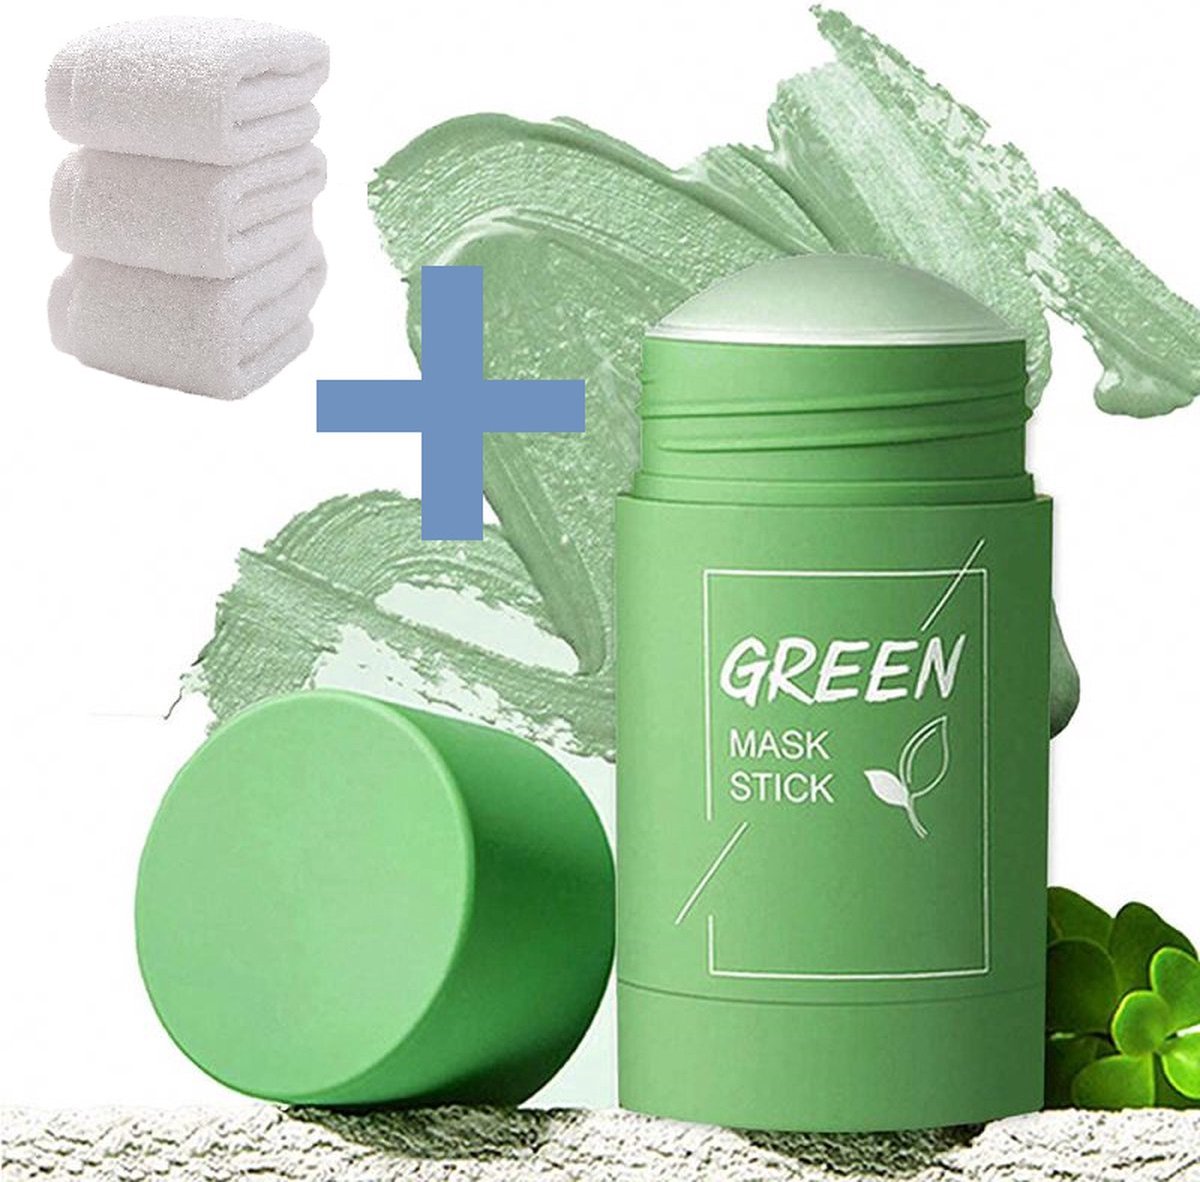 Ned products Green Mask Stick - Gezichtsmasker - Blackhead Remover - Huidverzorging - Mee Eters Verwijderen - Groene thee - + Handdoek